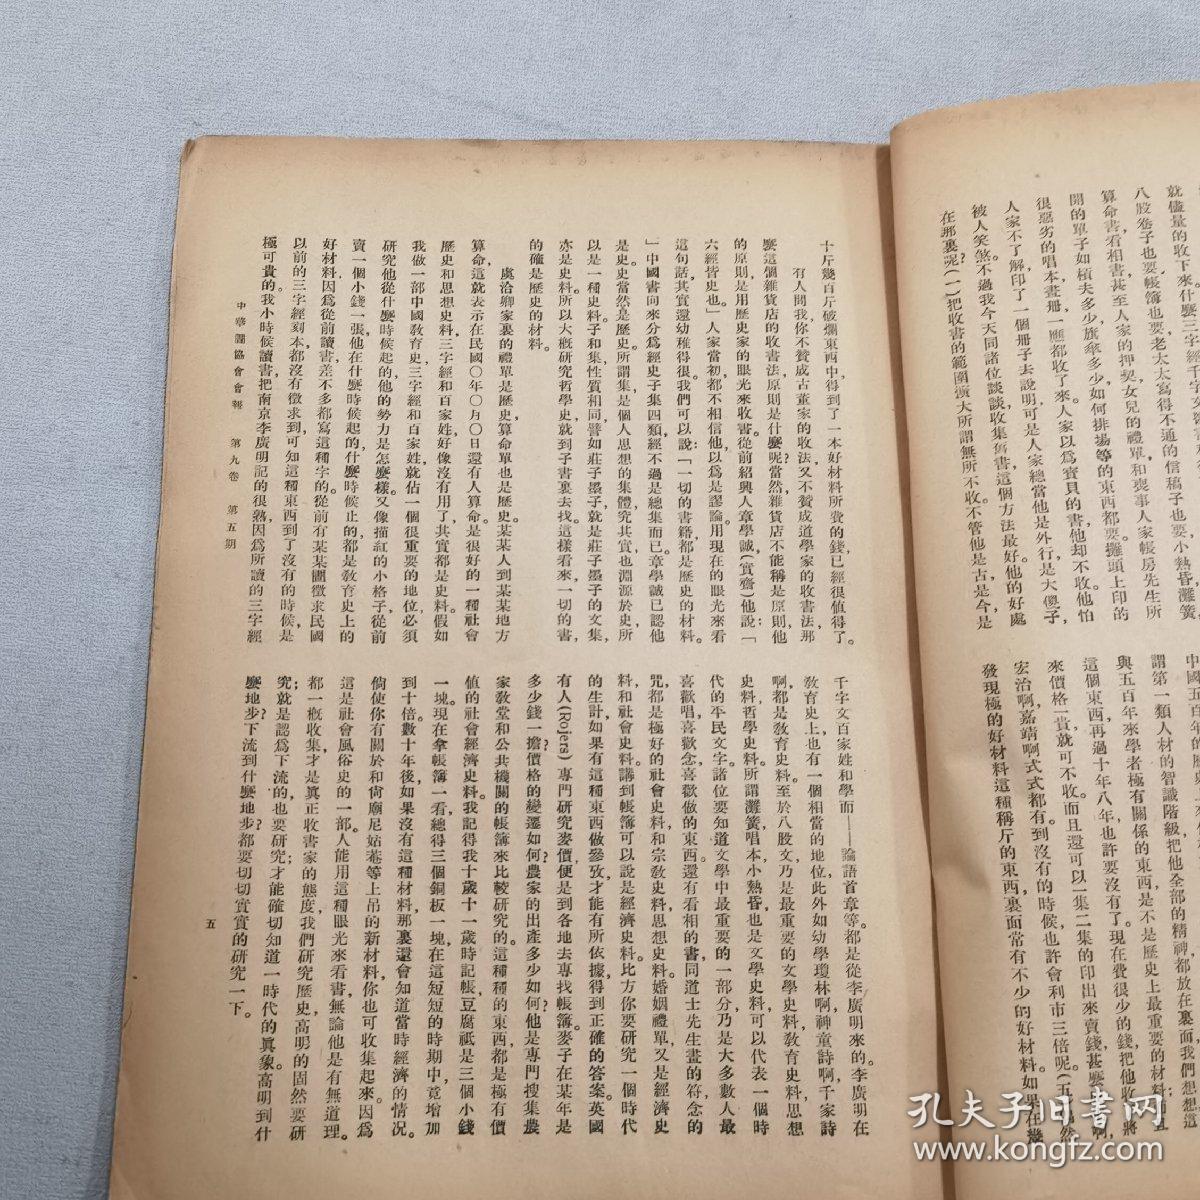 中华图书馆协会会报
第九卷第五期